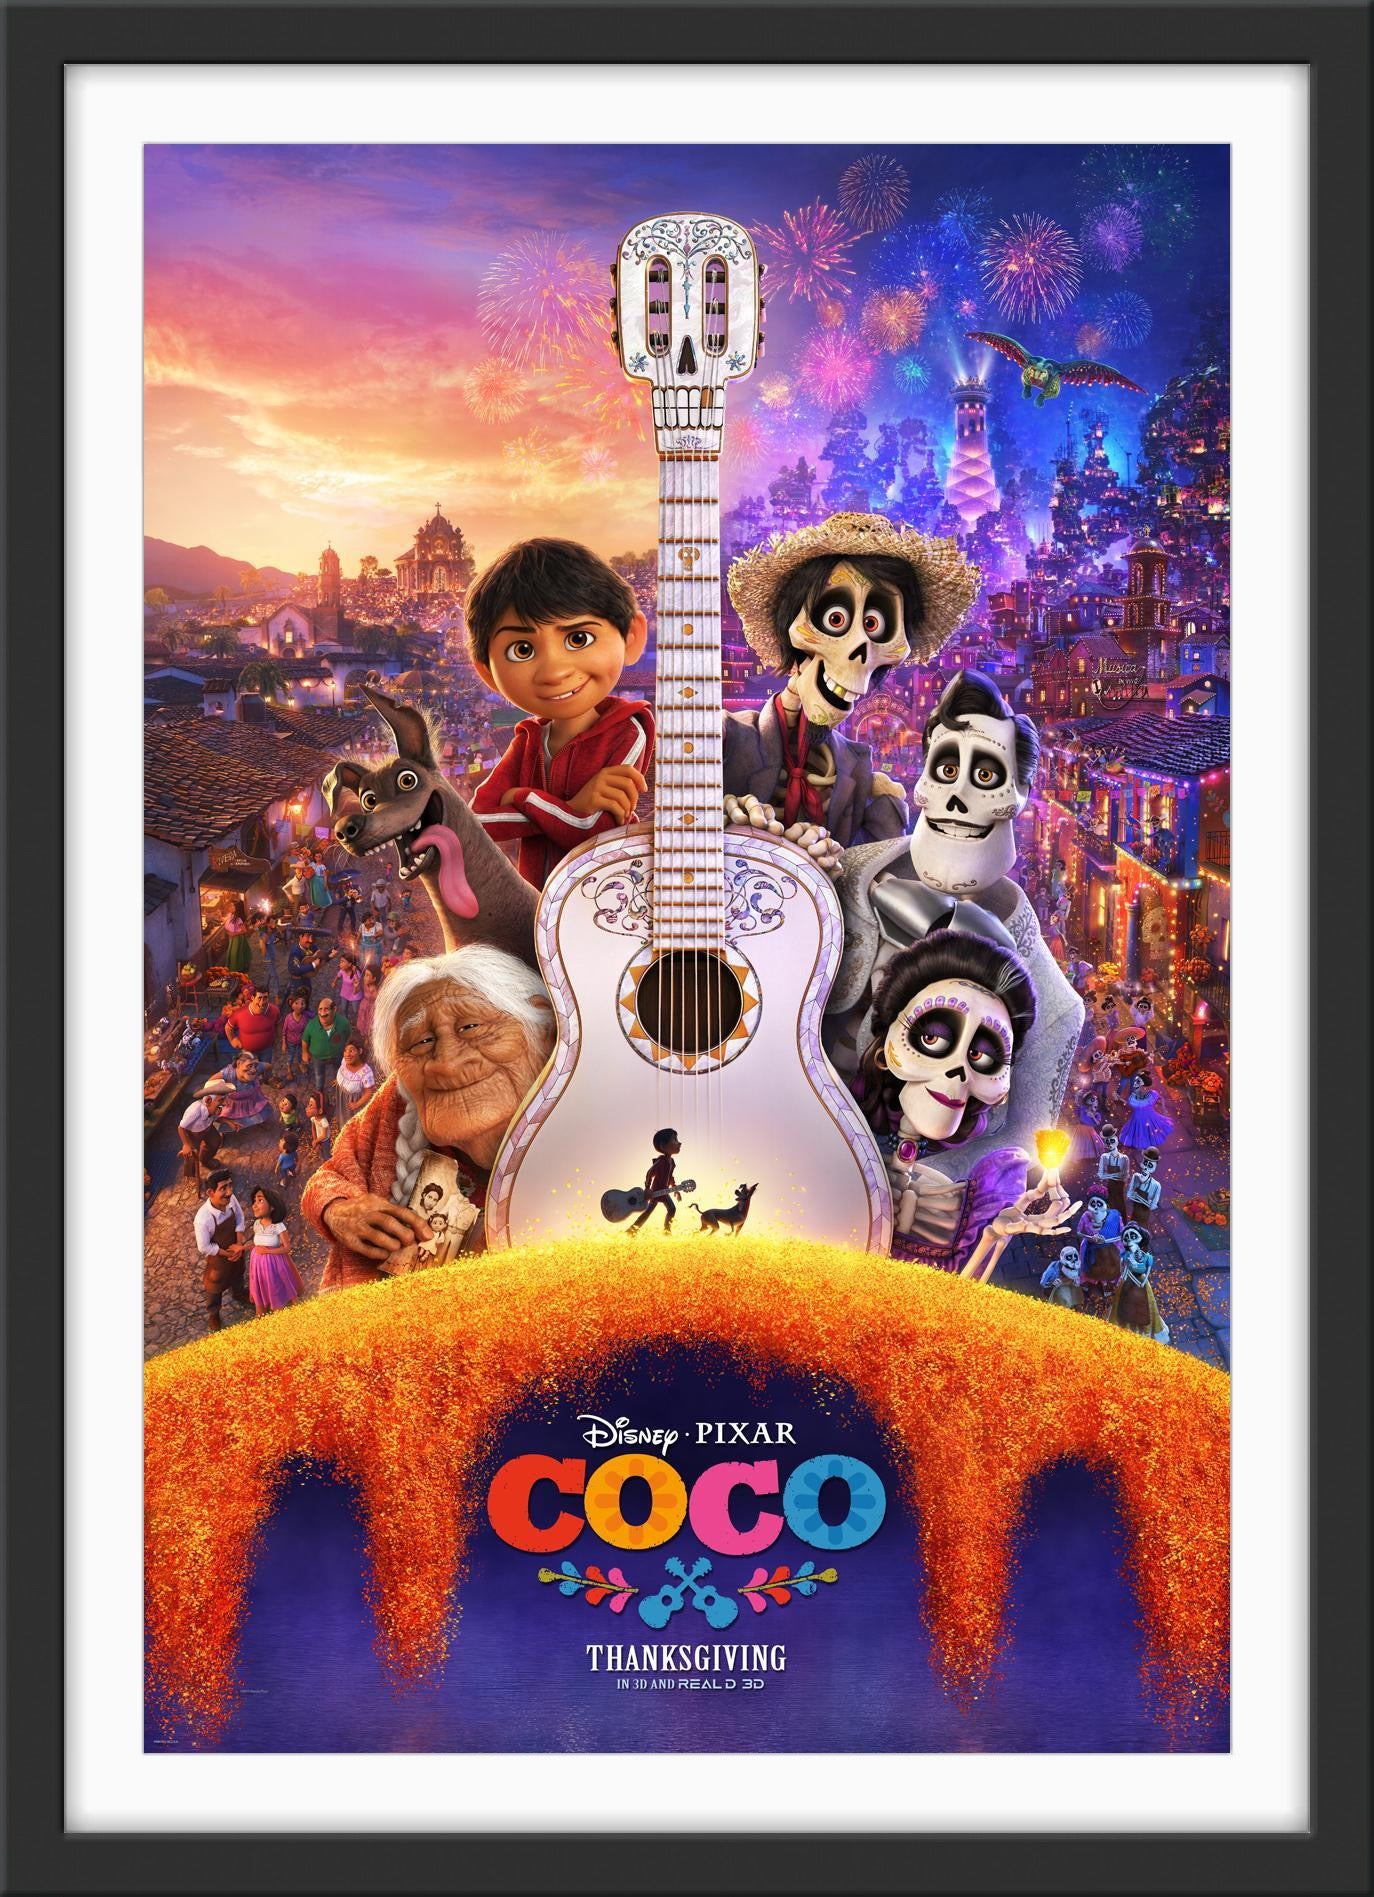 An original movie poster for the Disney / Pixar film Coco